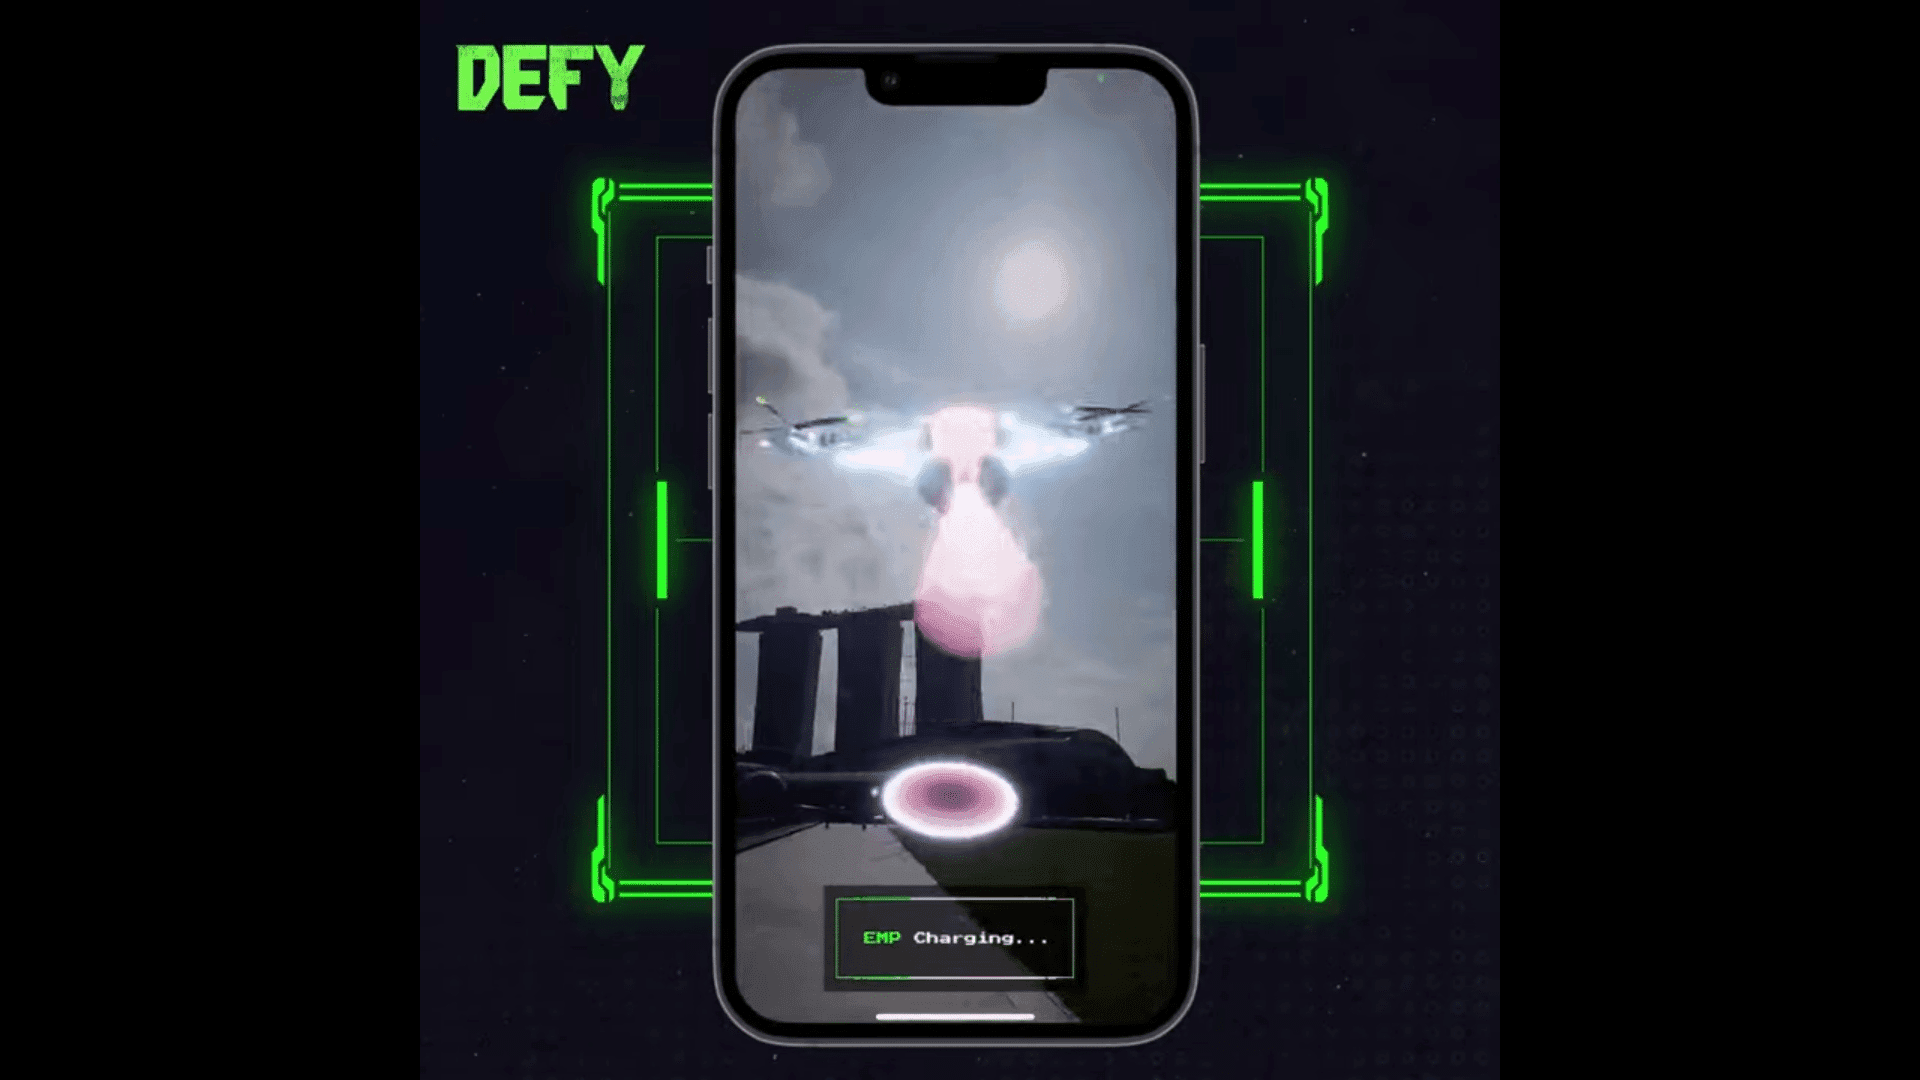 DEFY एक मूव-टू-अर्न मोबाइल गेम है जो एक इमर्सिव मेटावर्स अनुभव प्रदान करने के लिए आभासी और भौतिक दुनिया के तत्वों को जोड़ता है।